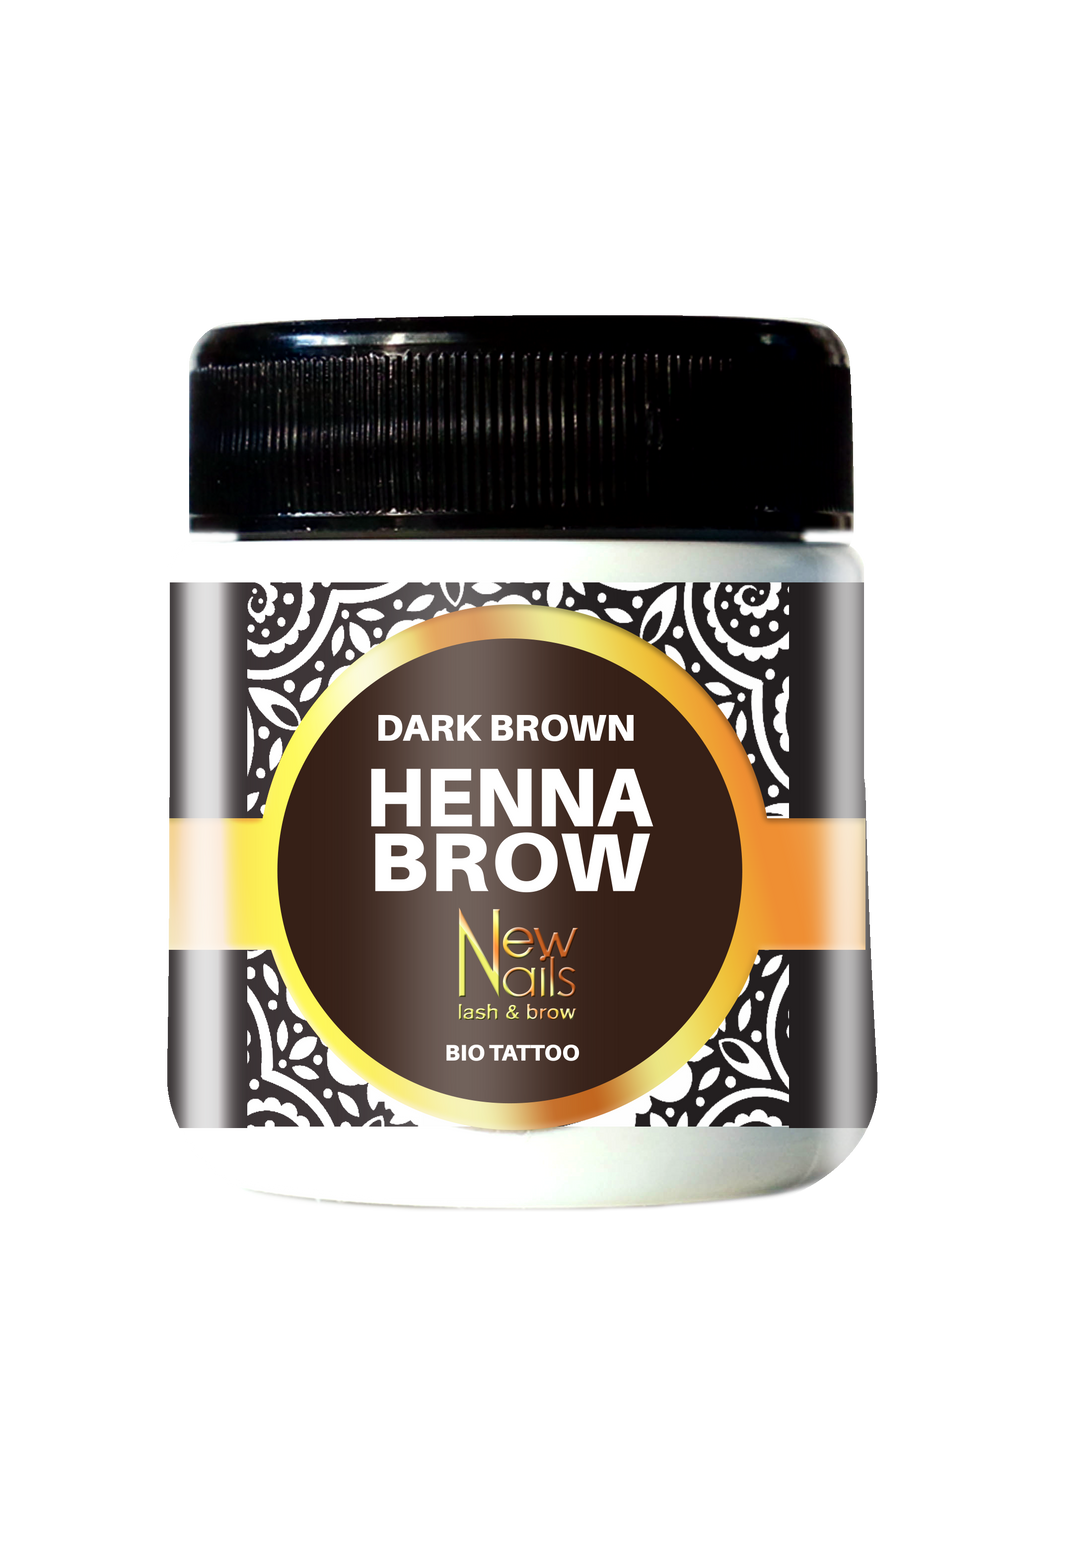 HENNA BROW - Dark Brown - Dark brown